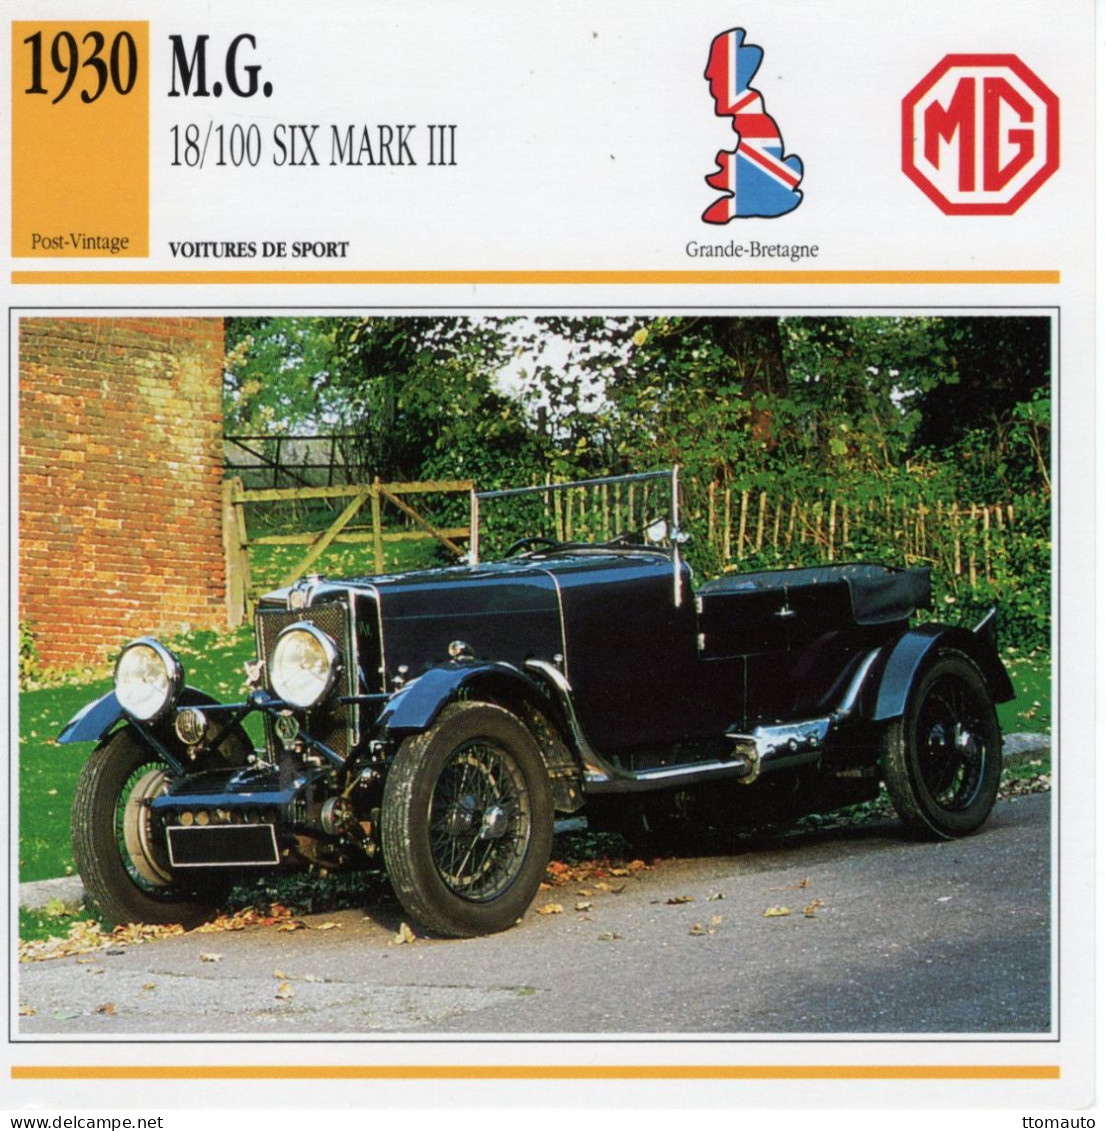 Fiche  -  Voiture De Sport  -  M.G. 18/100 Six Mk.III  (1930)   -  Carte De Collection - Coches